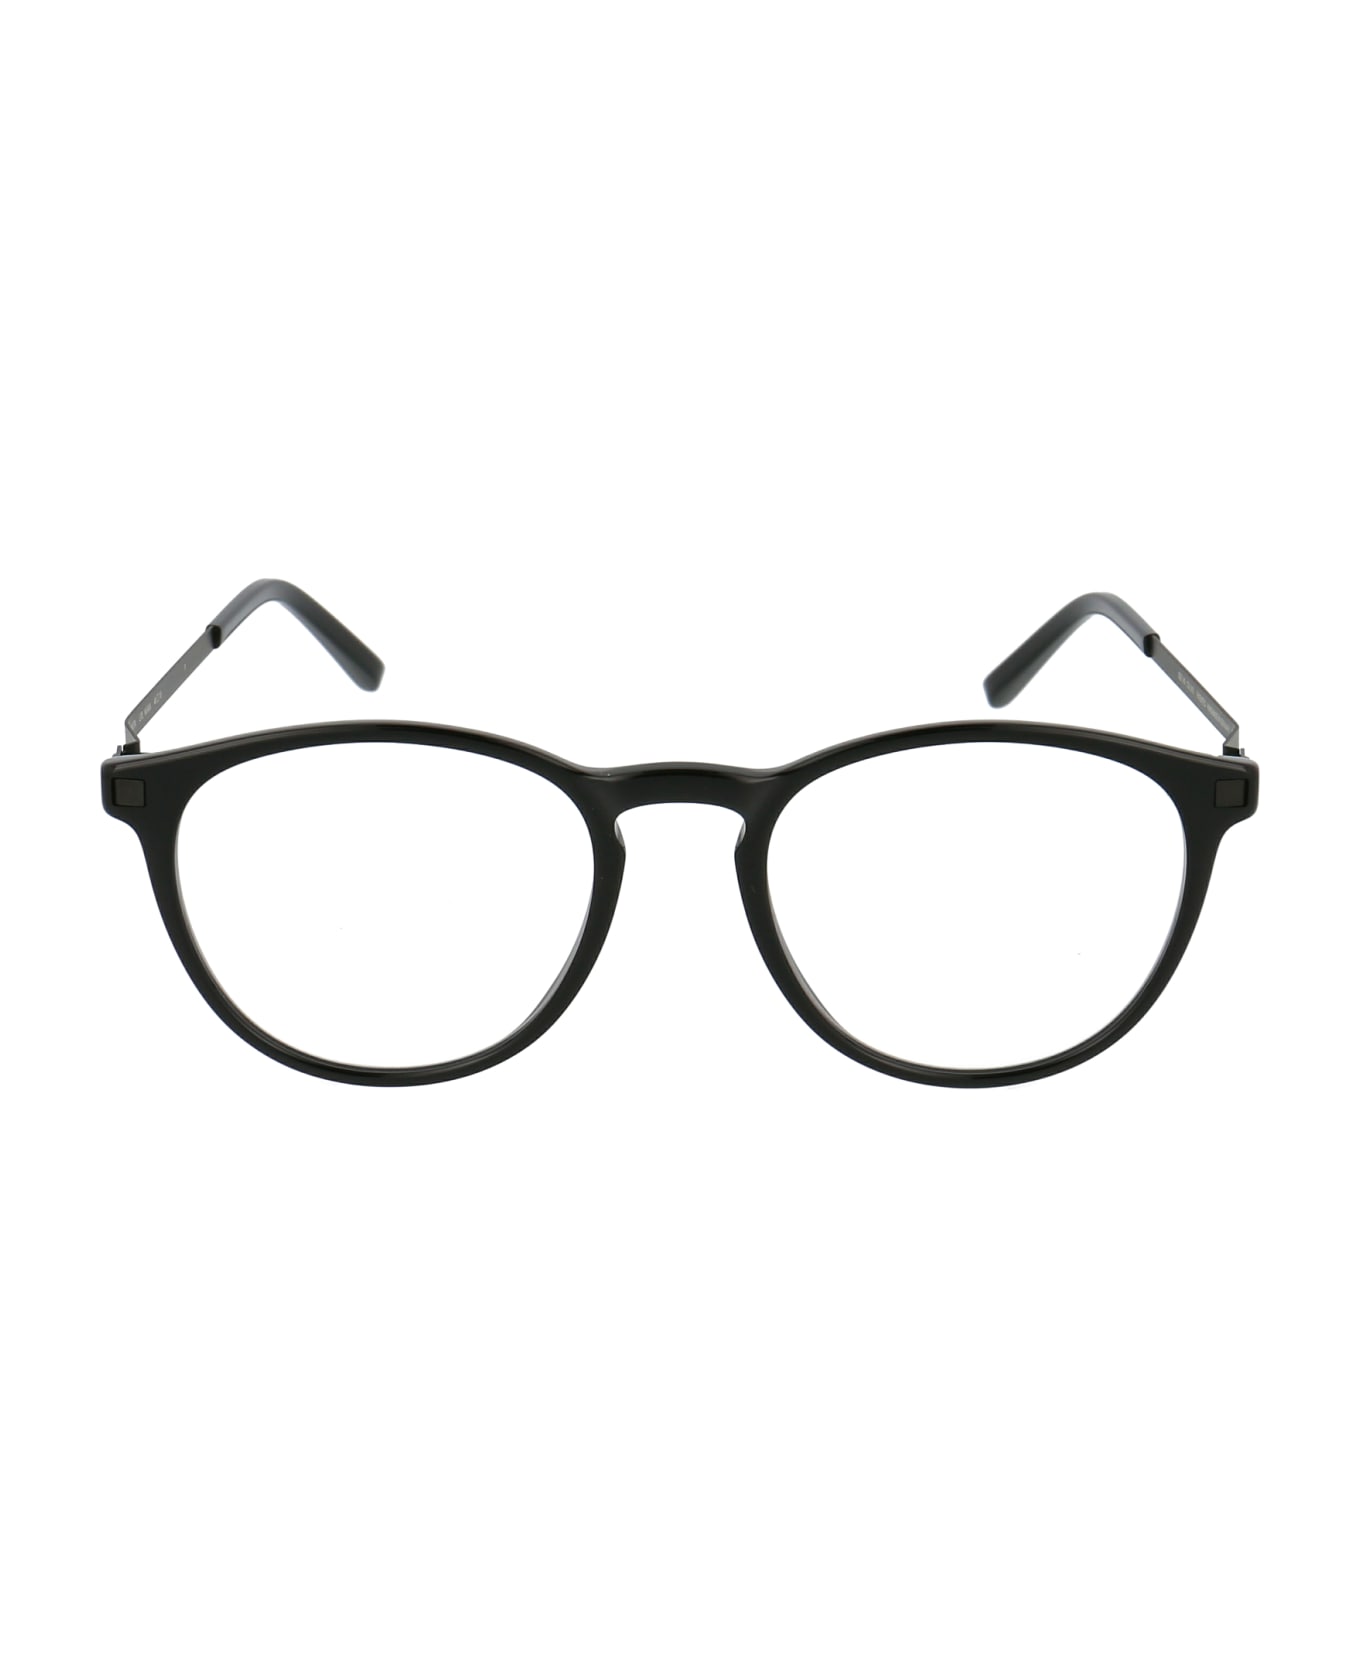 Mykita Nukka Glasses - 915 C2-Black/Black Clear